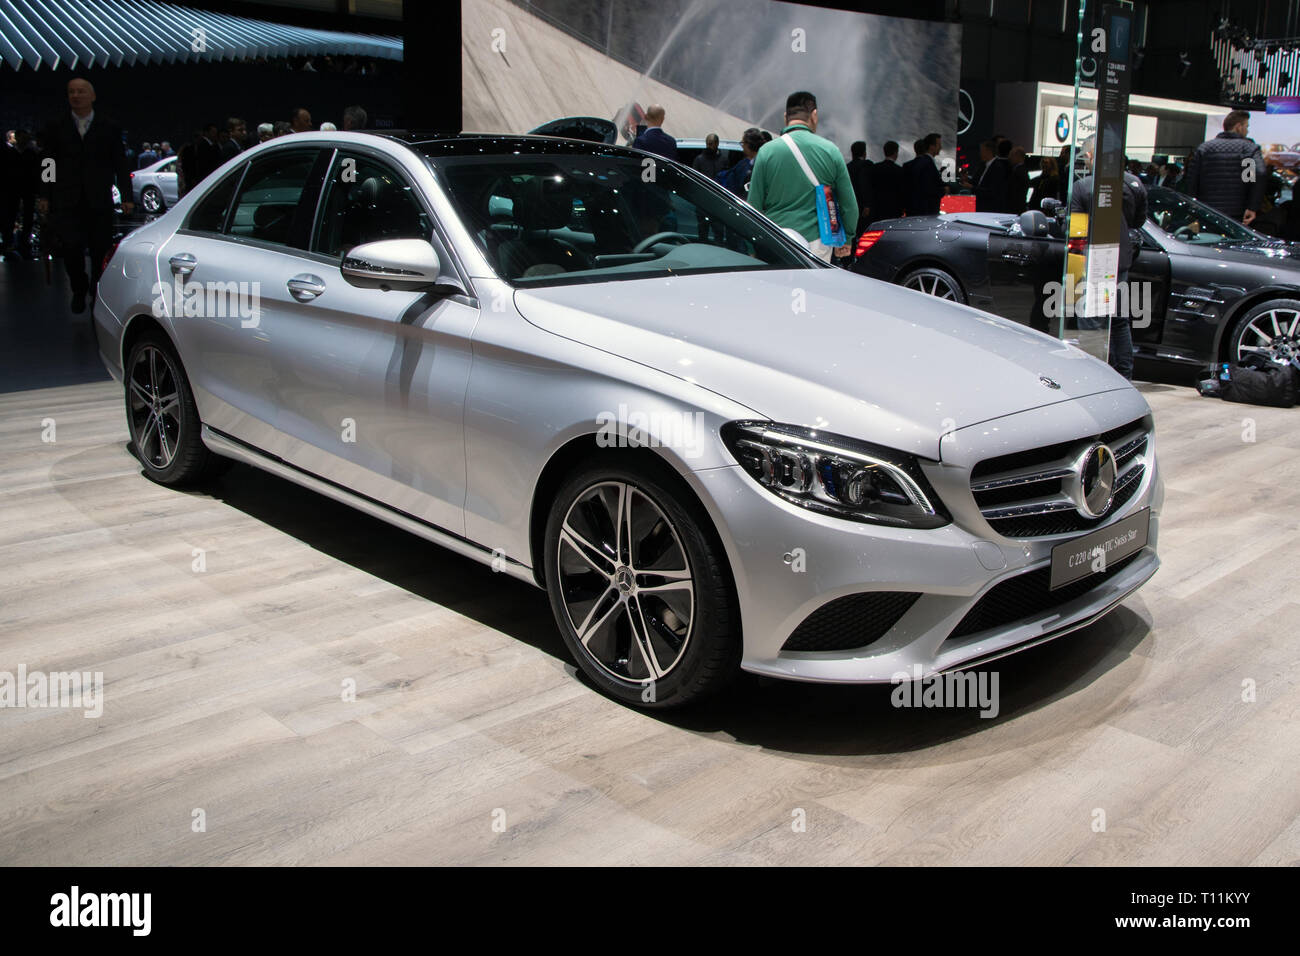 Mercedes Benz C220 Stockfotos und -bilder Kaufen - Alamy